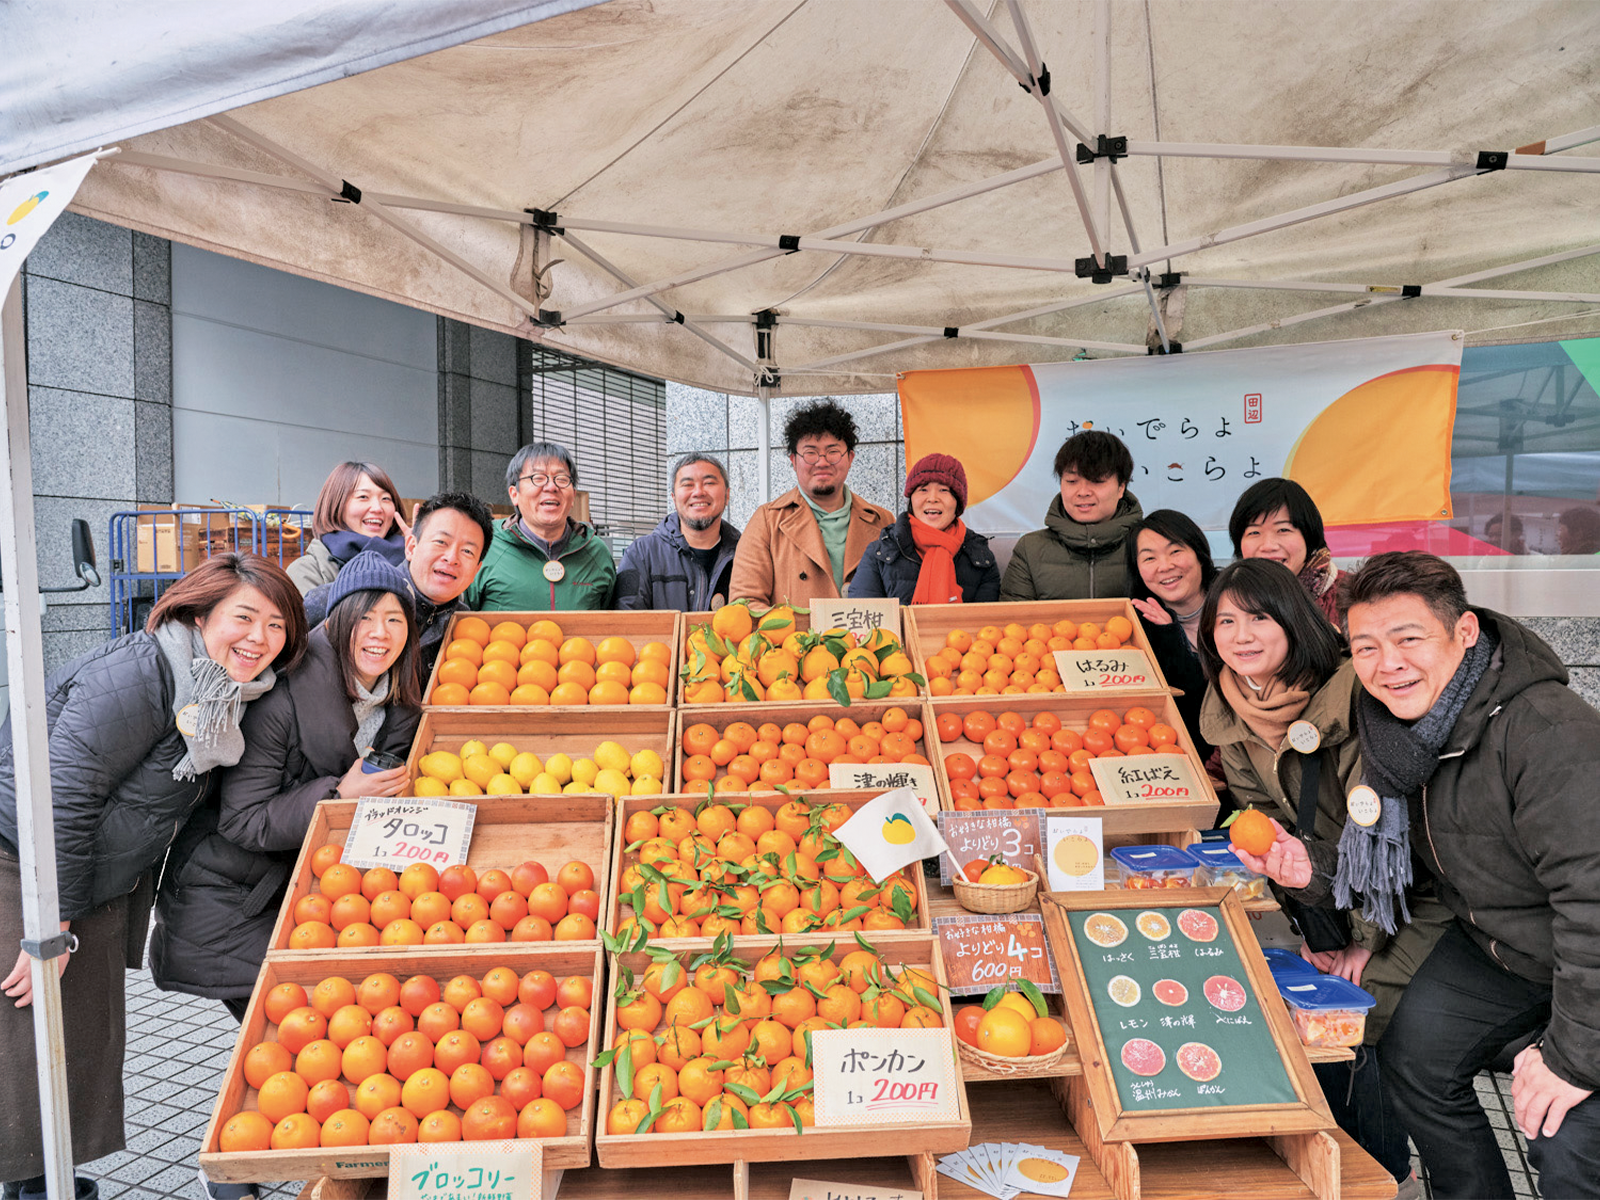 昨年開講した「たなコトアカデミー」第1期では、東京・渋谷区の「青山ファーマーズマーケット」に出店し、田辺の柑橘や米、梅干しなどを販売。店のレイアウトからSNSを通じたPR、当日の販売まで、塾生が主体的に行った。